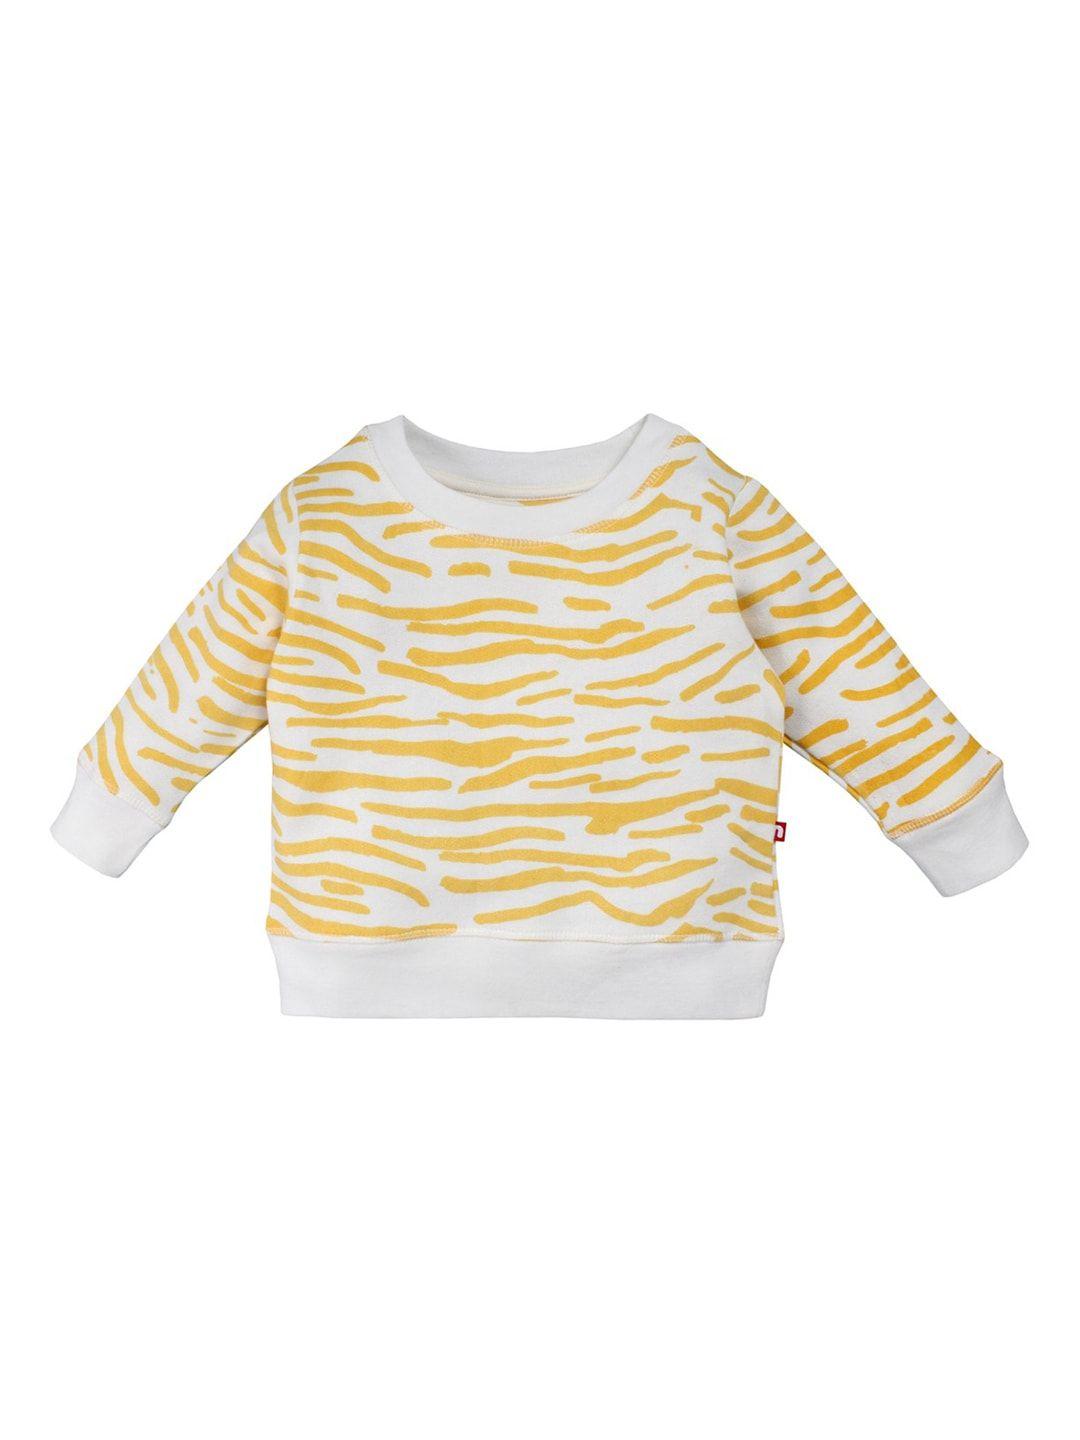 nino bambino unisex organic cotton cream-coloured & yellow printed sustainable sweatshirt